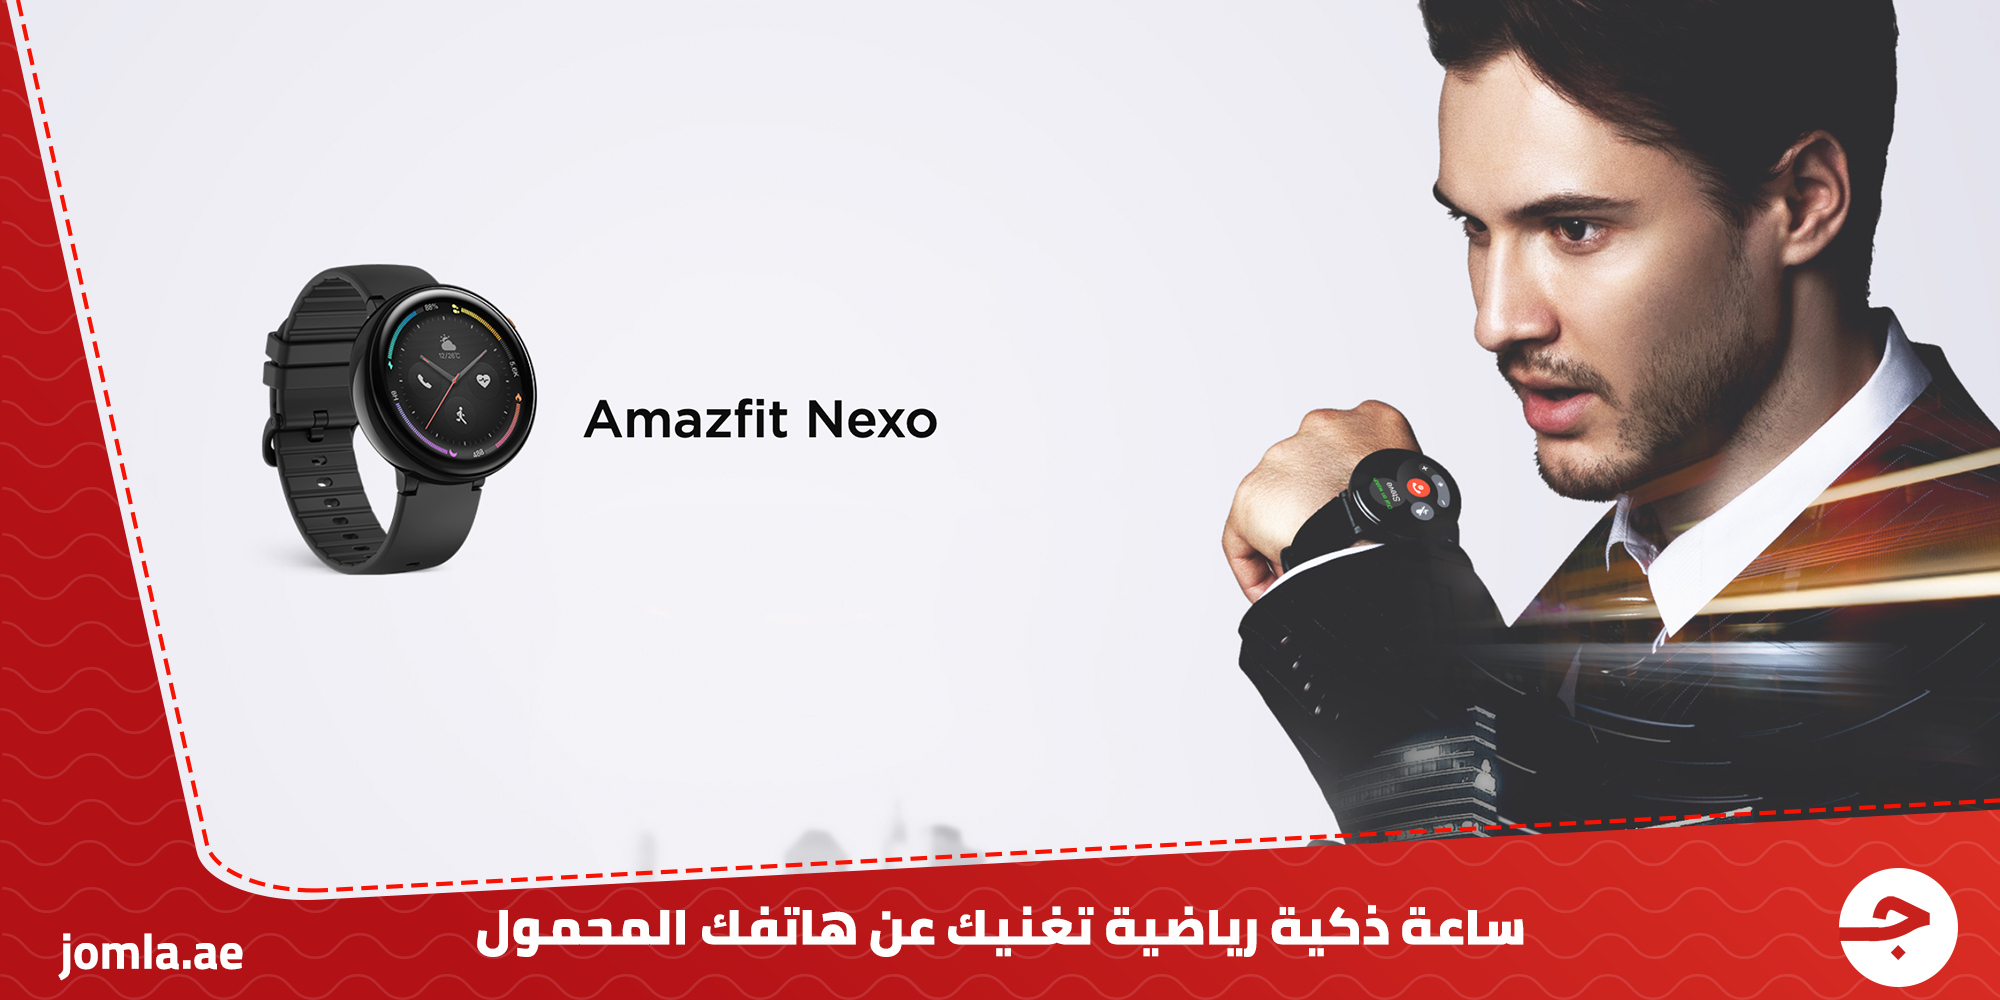 Amazfit Nexo ساعة ذكية رياضية تغنيك عن هاتفك المحمول